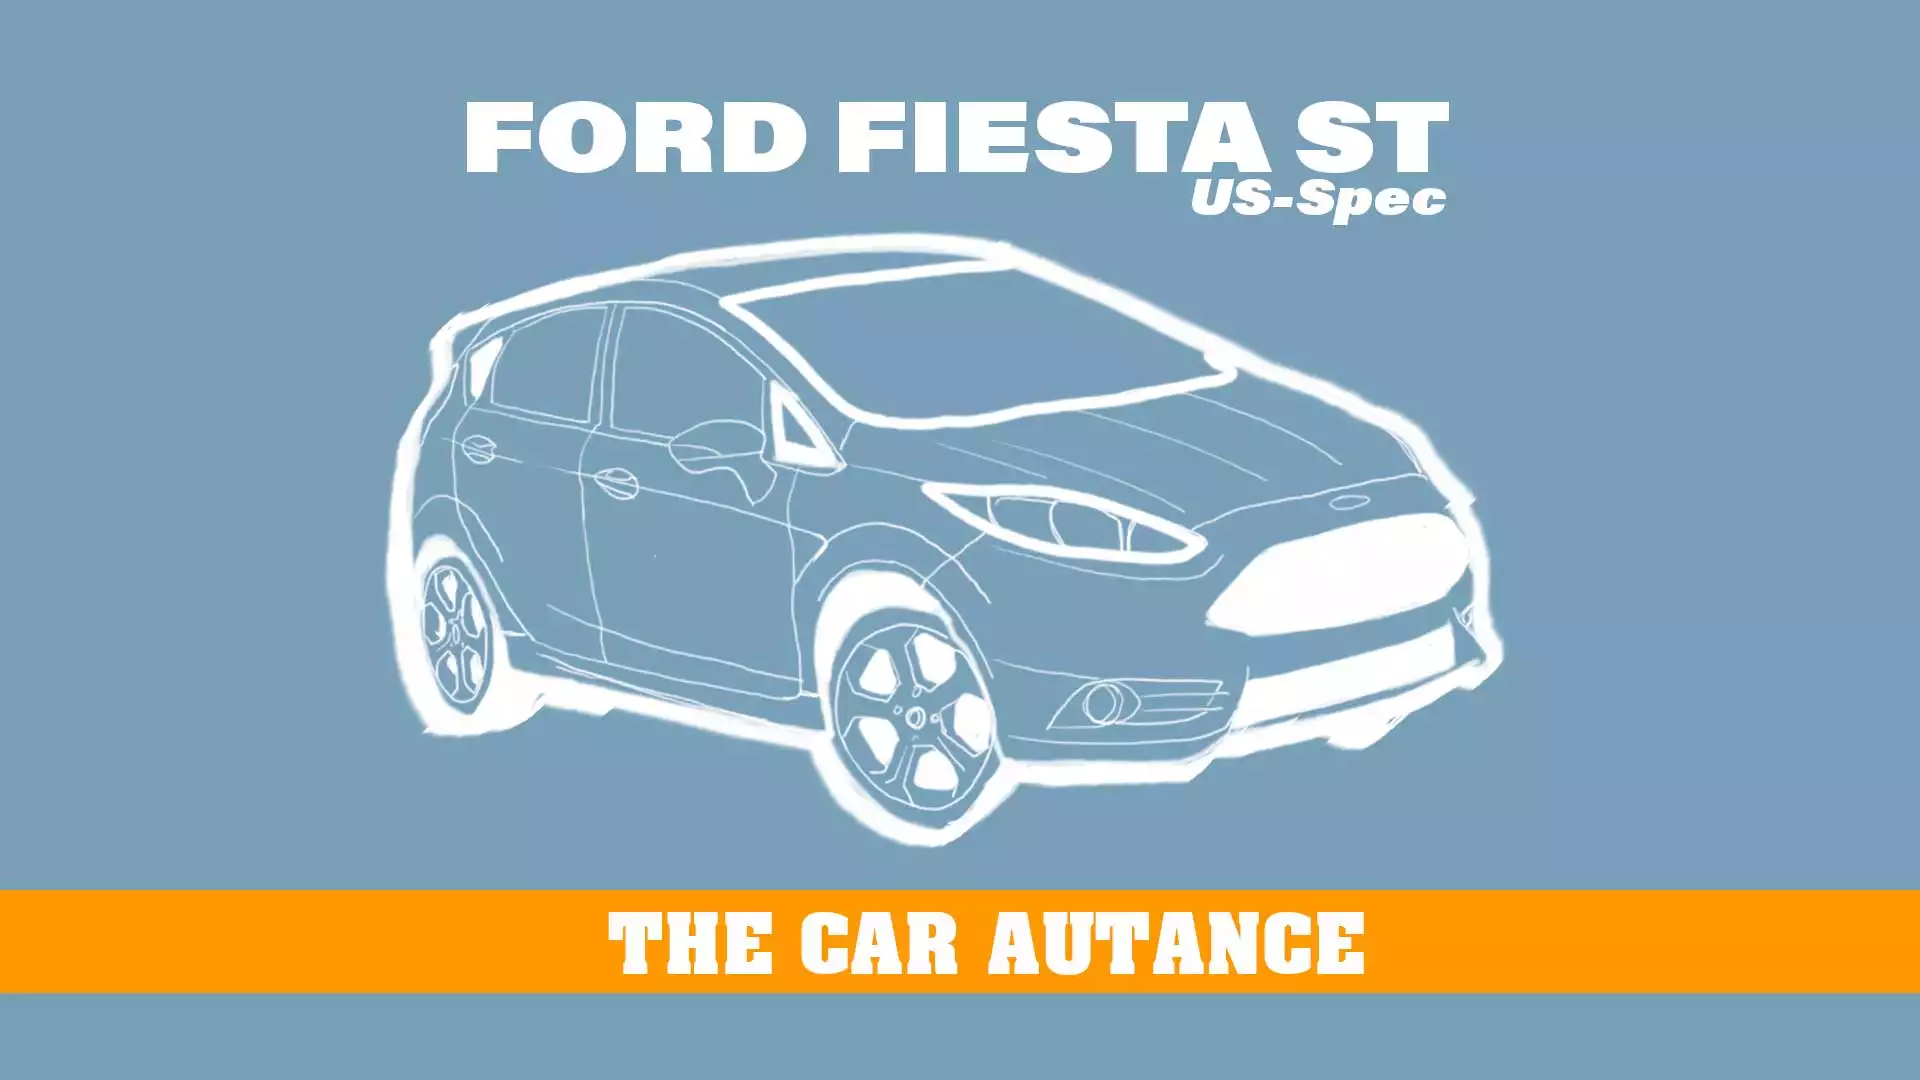 Ford Fiesta ST: The Car Autance (U.S. Spec; 2014-2019)